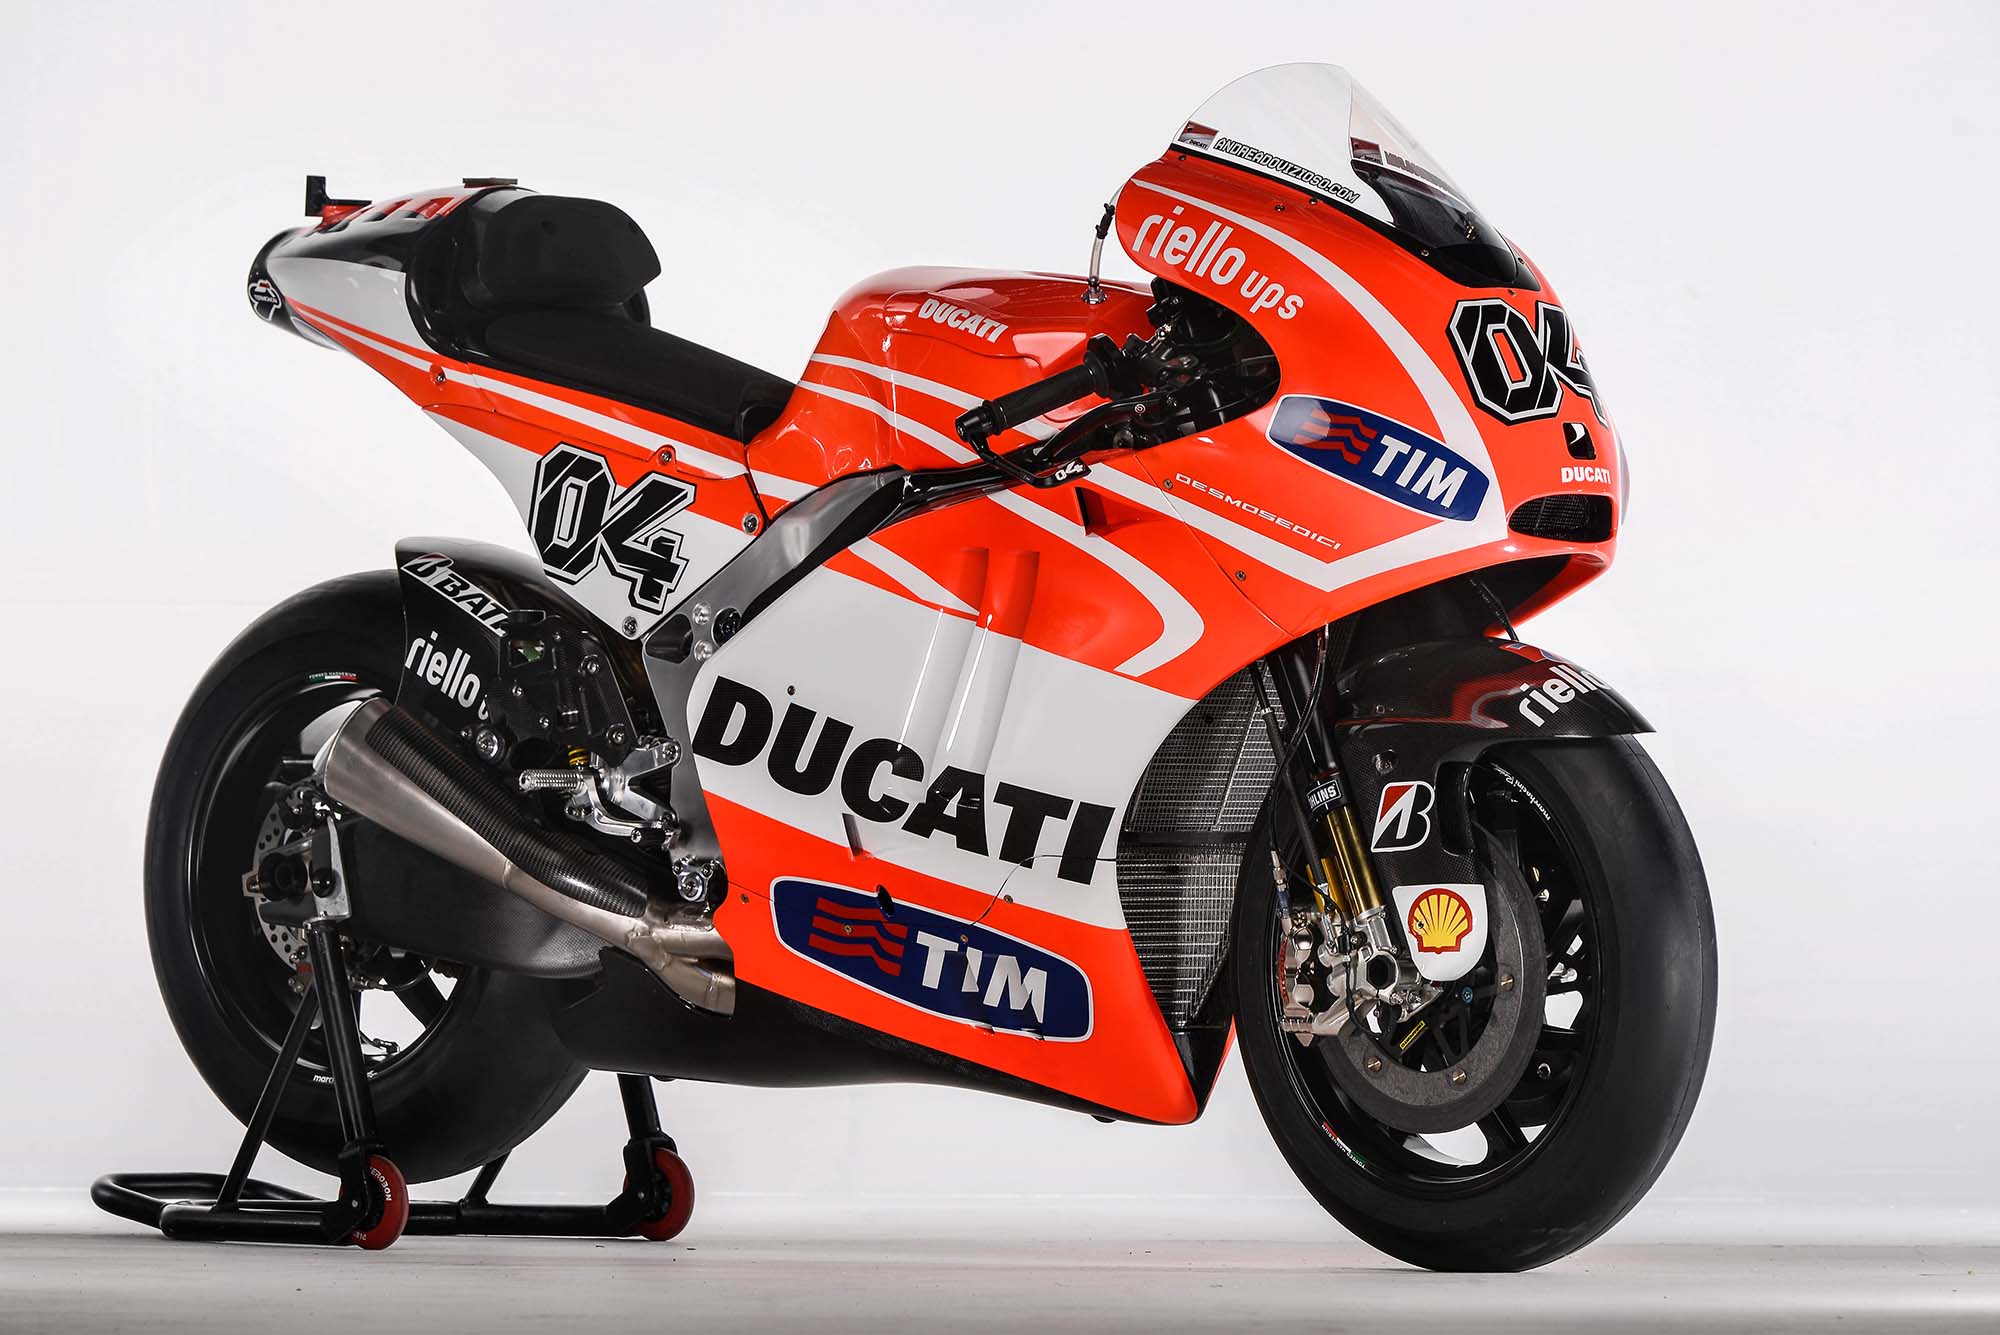 MotoGP, Foto terbaru Motor Ducati Desmosedici GP13: Spesifikasi dan Foto Motor Ducati Desmosedici GP13